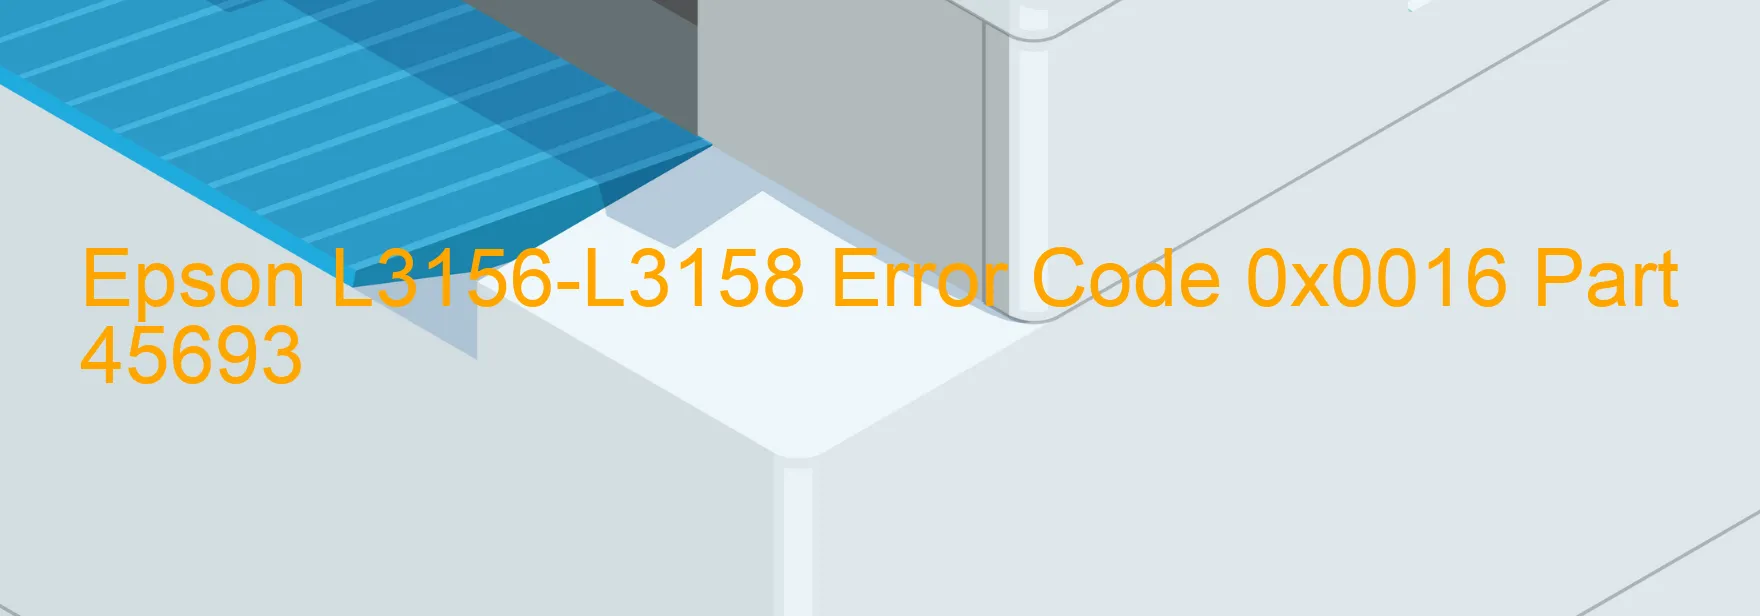 Epson L3156-L3158 Error Code 0x0016 Part 45693